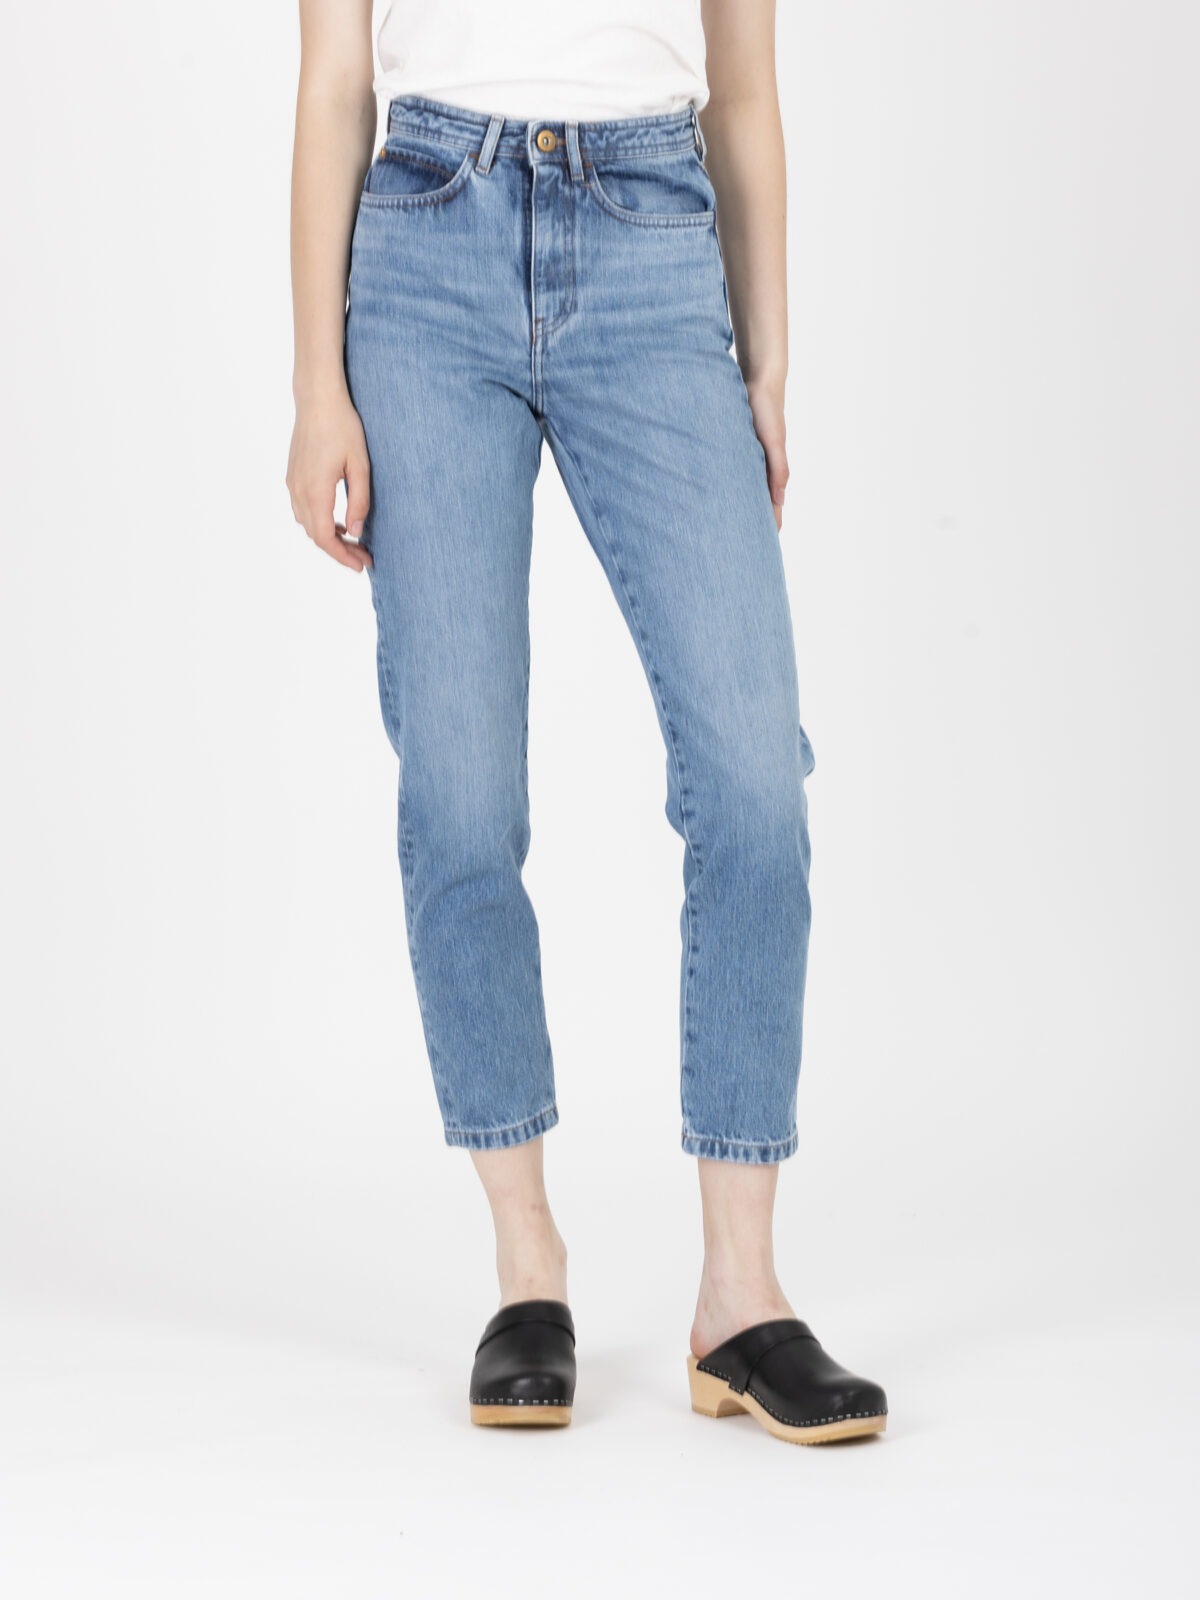 momon-denim-jeans-high-rise-sessun-mom-matchboxathens